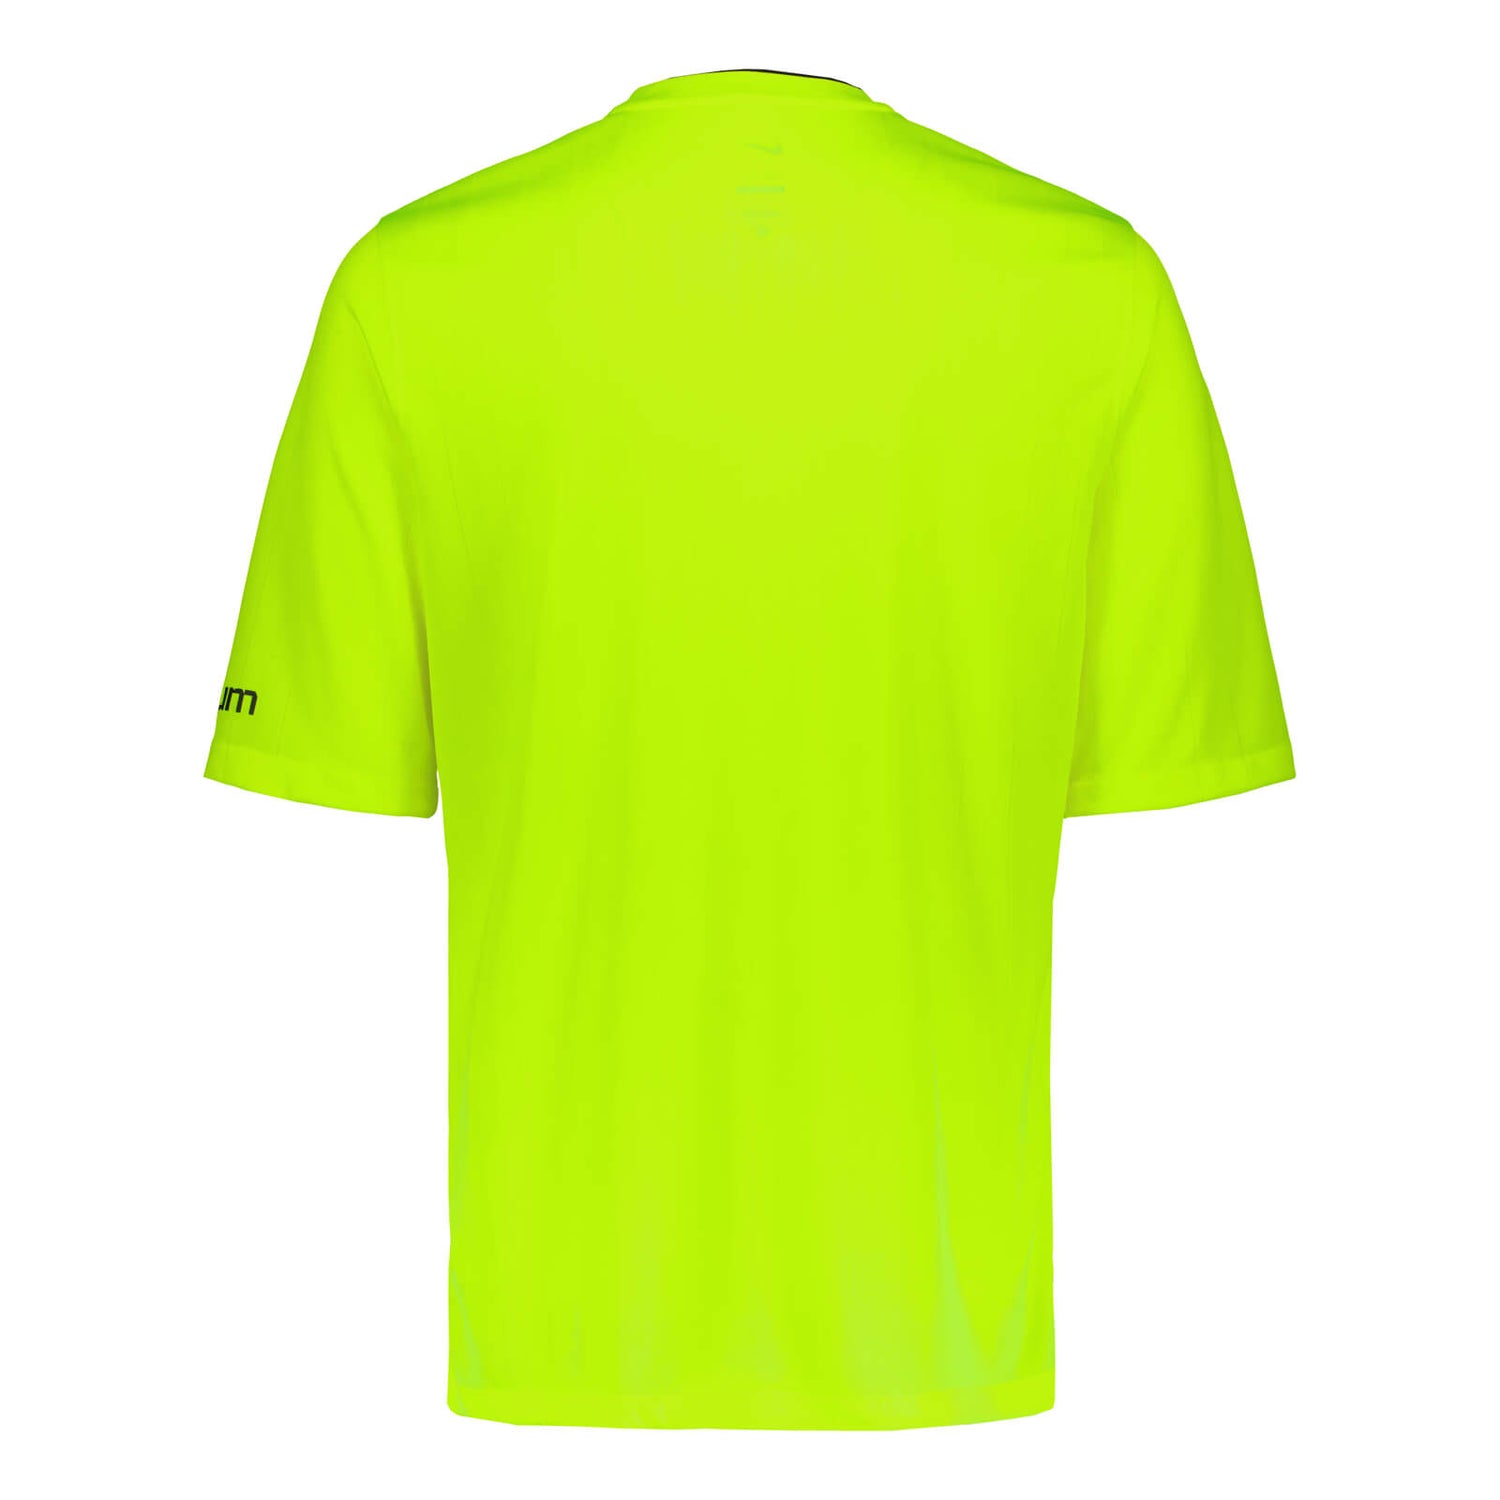 Erotuomarin lyhythihainen paita + erotuomarinmerkki, Keltainen